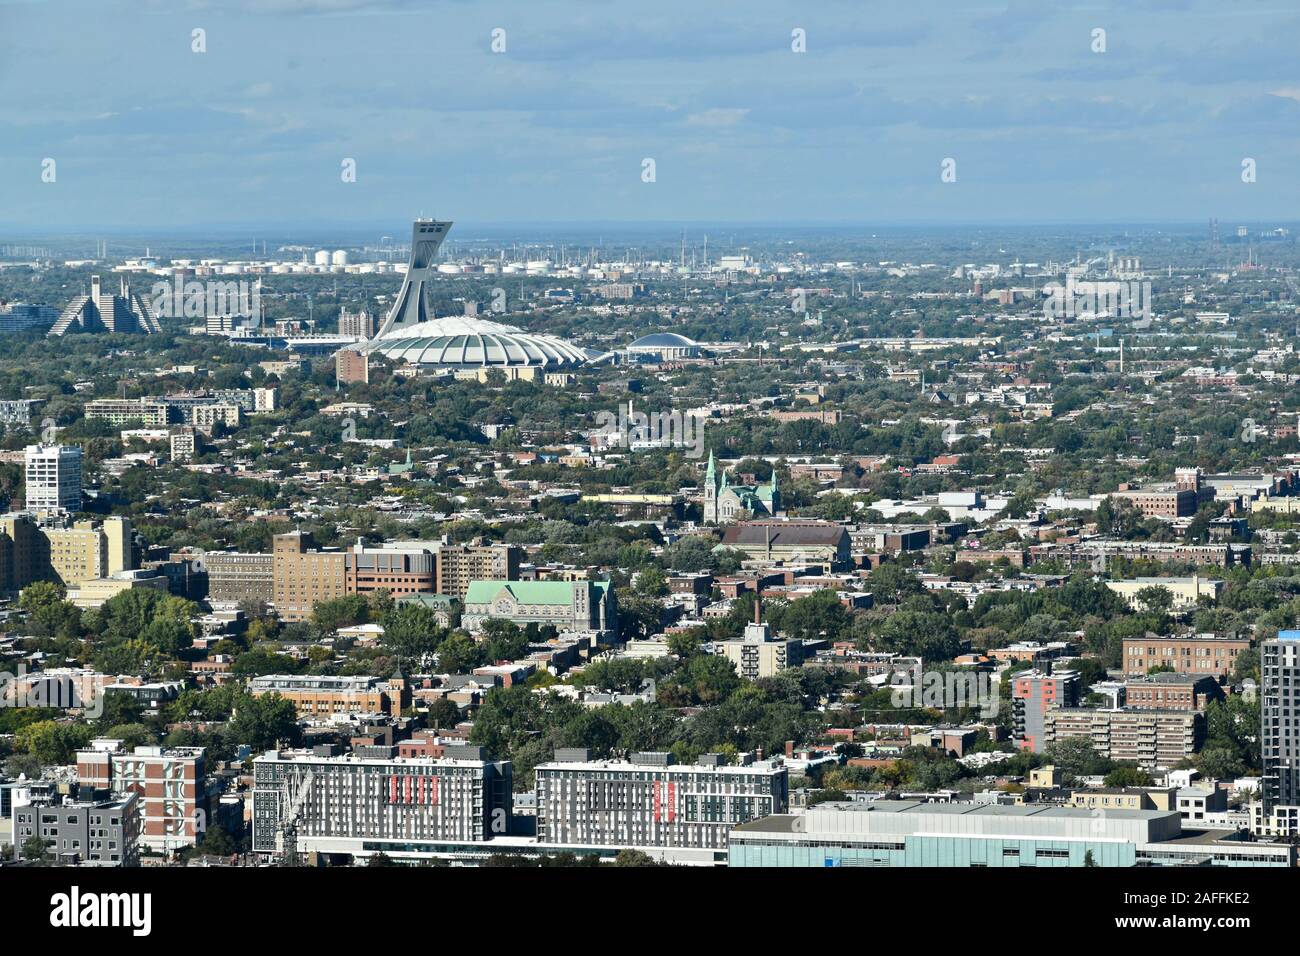 Le Parc olympique de Montréal, Montréal, Québec, Canada Banque D'Images